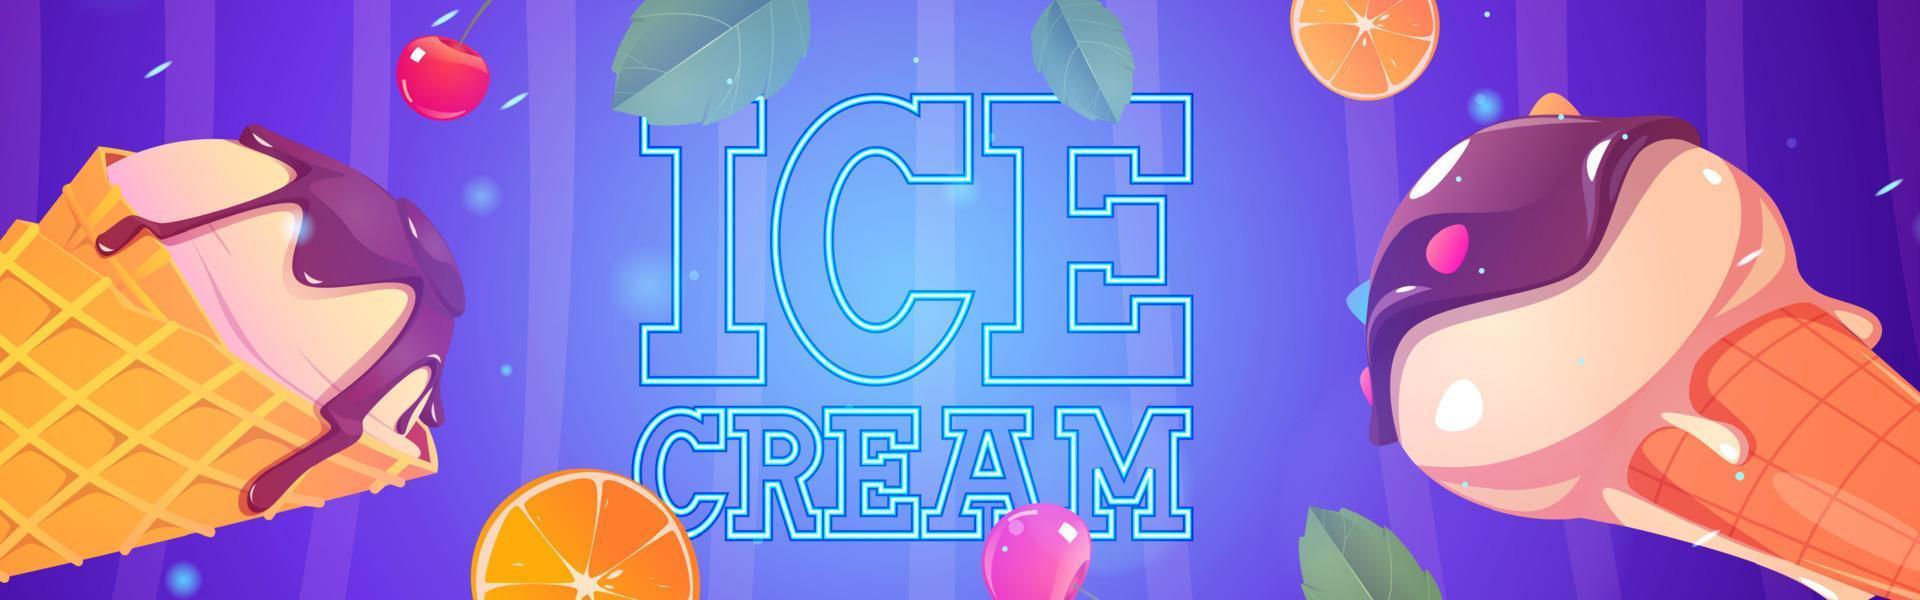 banner publicitario de dibujos animados de helados, conos de gofres de helado vector